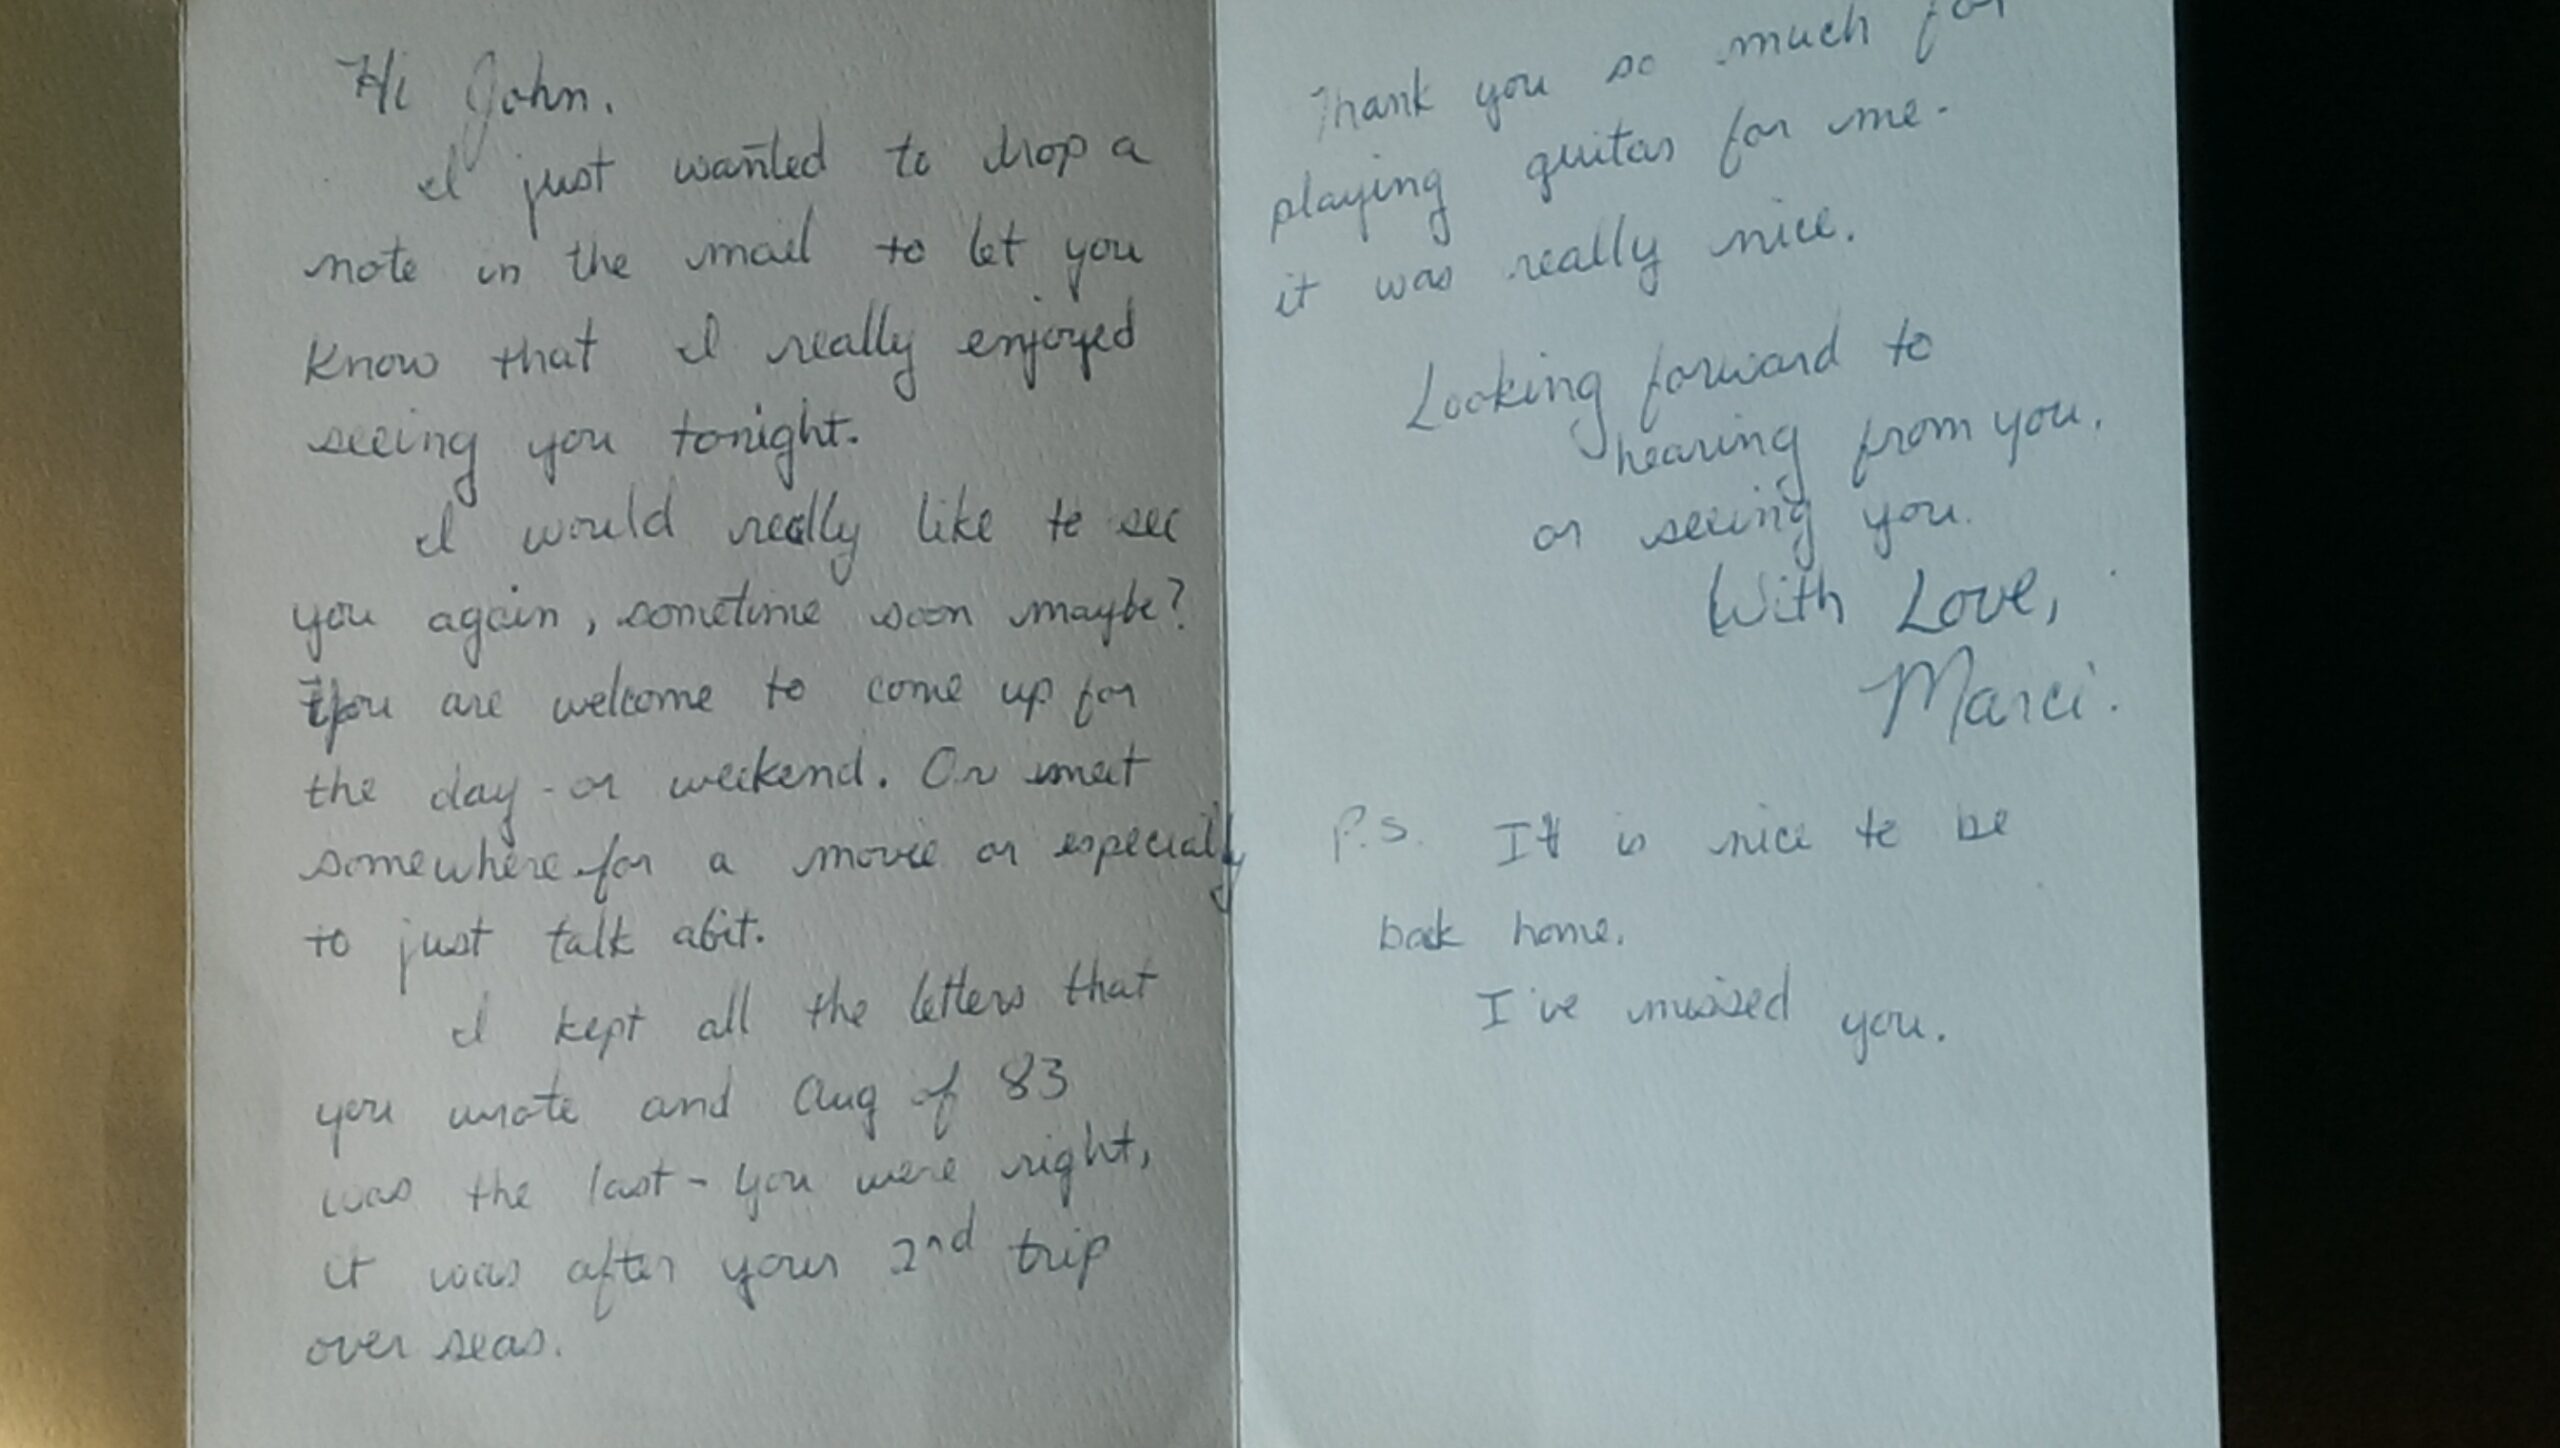 Marci's love letter to John 